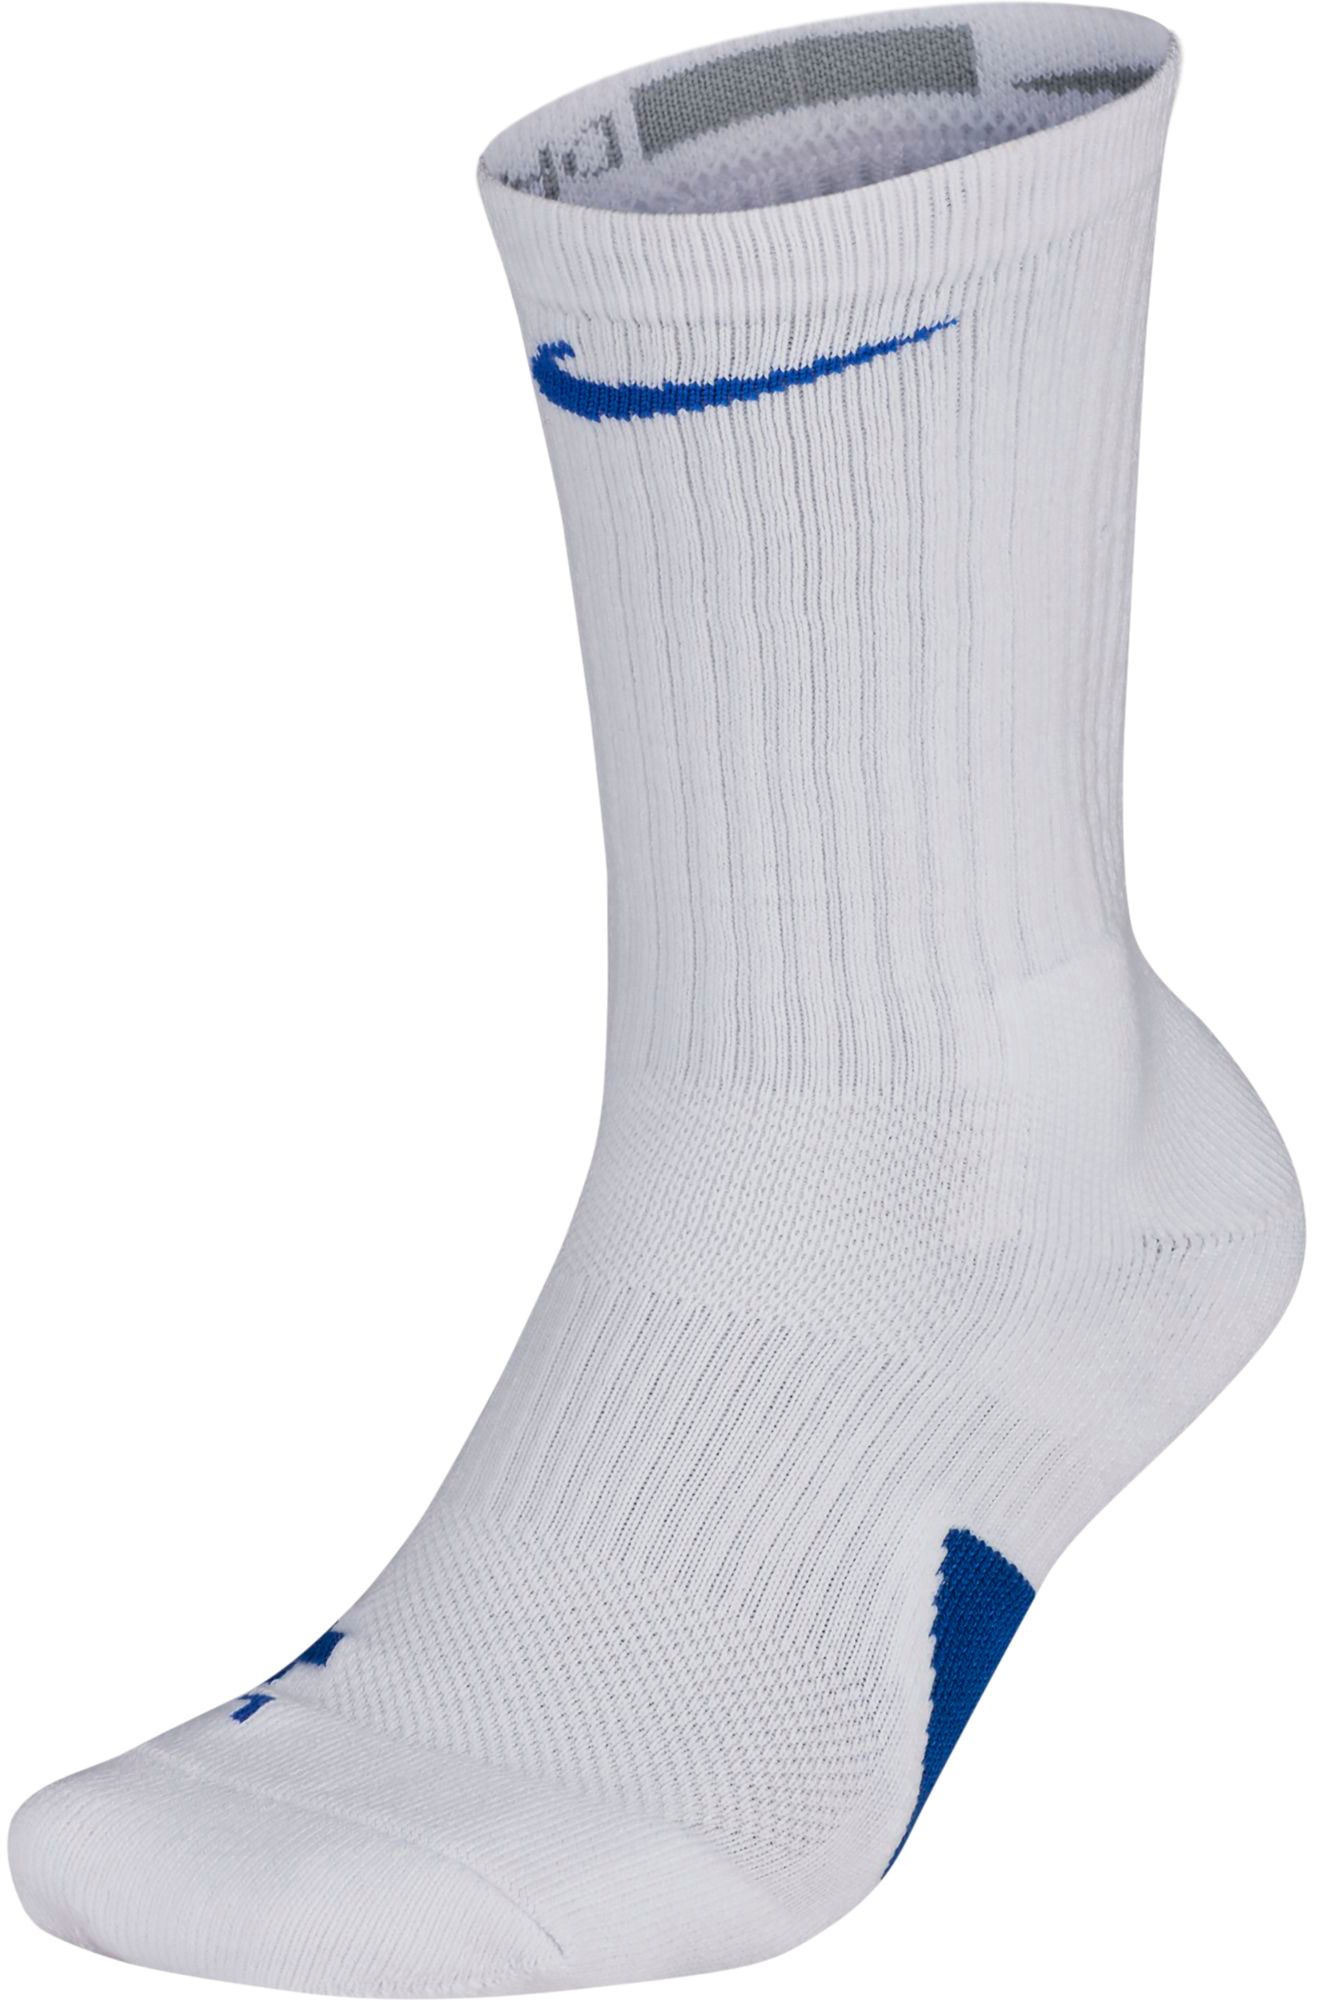 nike front logo socks